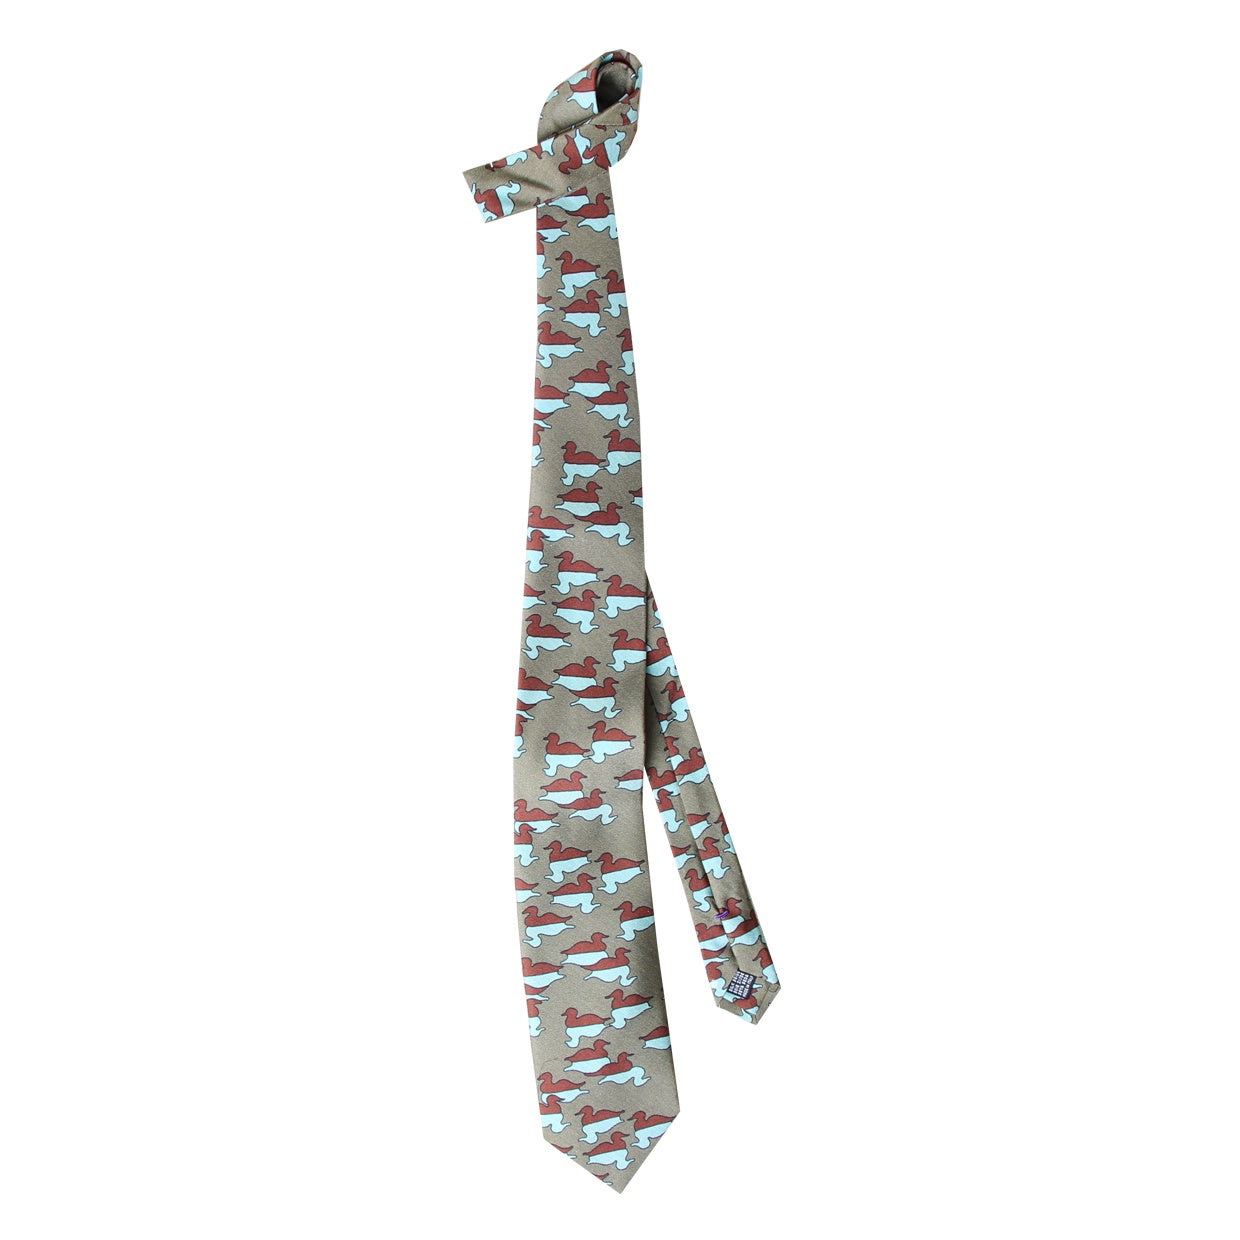 Cravate Parure madder imprimé Canards posés - Vison motif céladon rouille